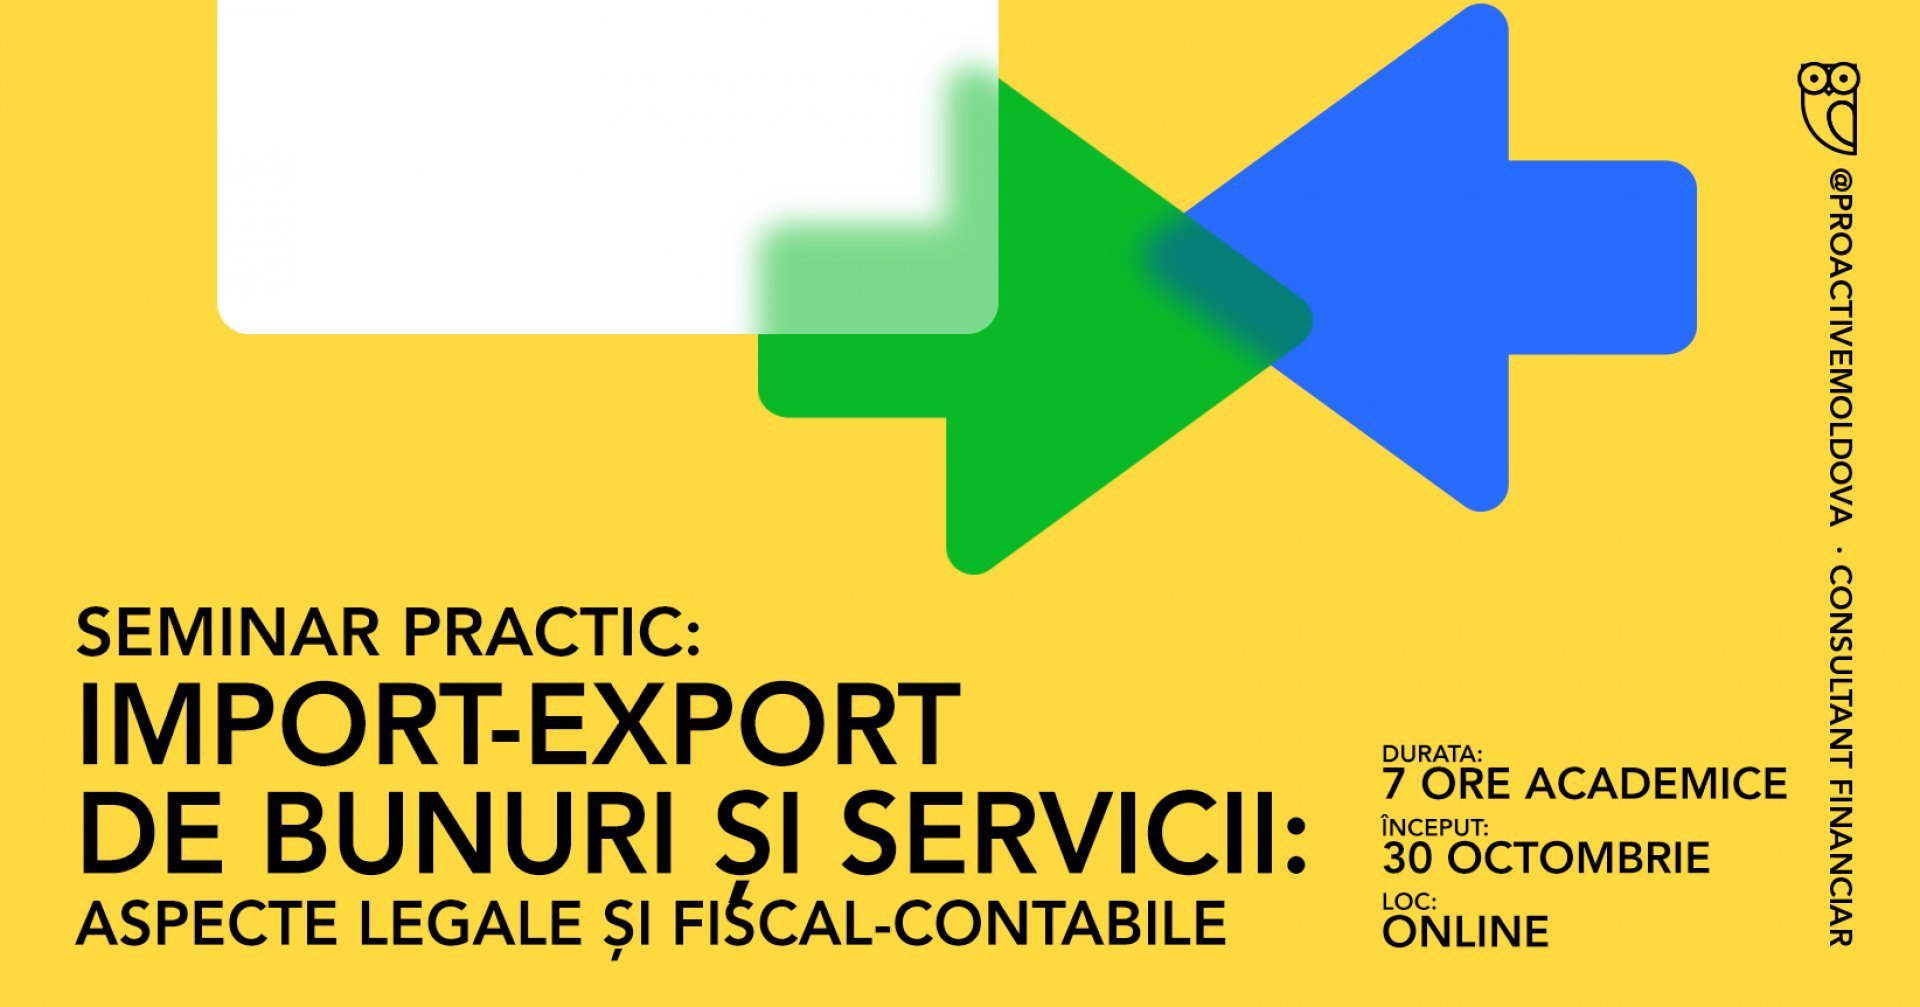 Seminar practic: Import-export de bunuri și servicii: aspecte legale și fiscal-contabile